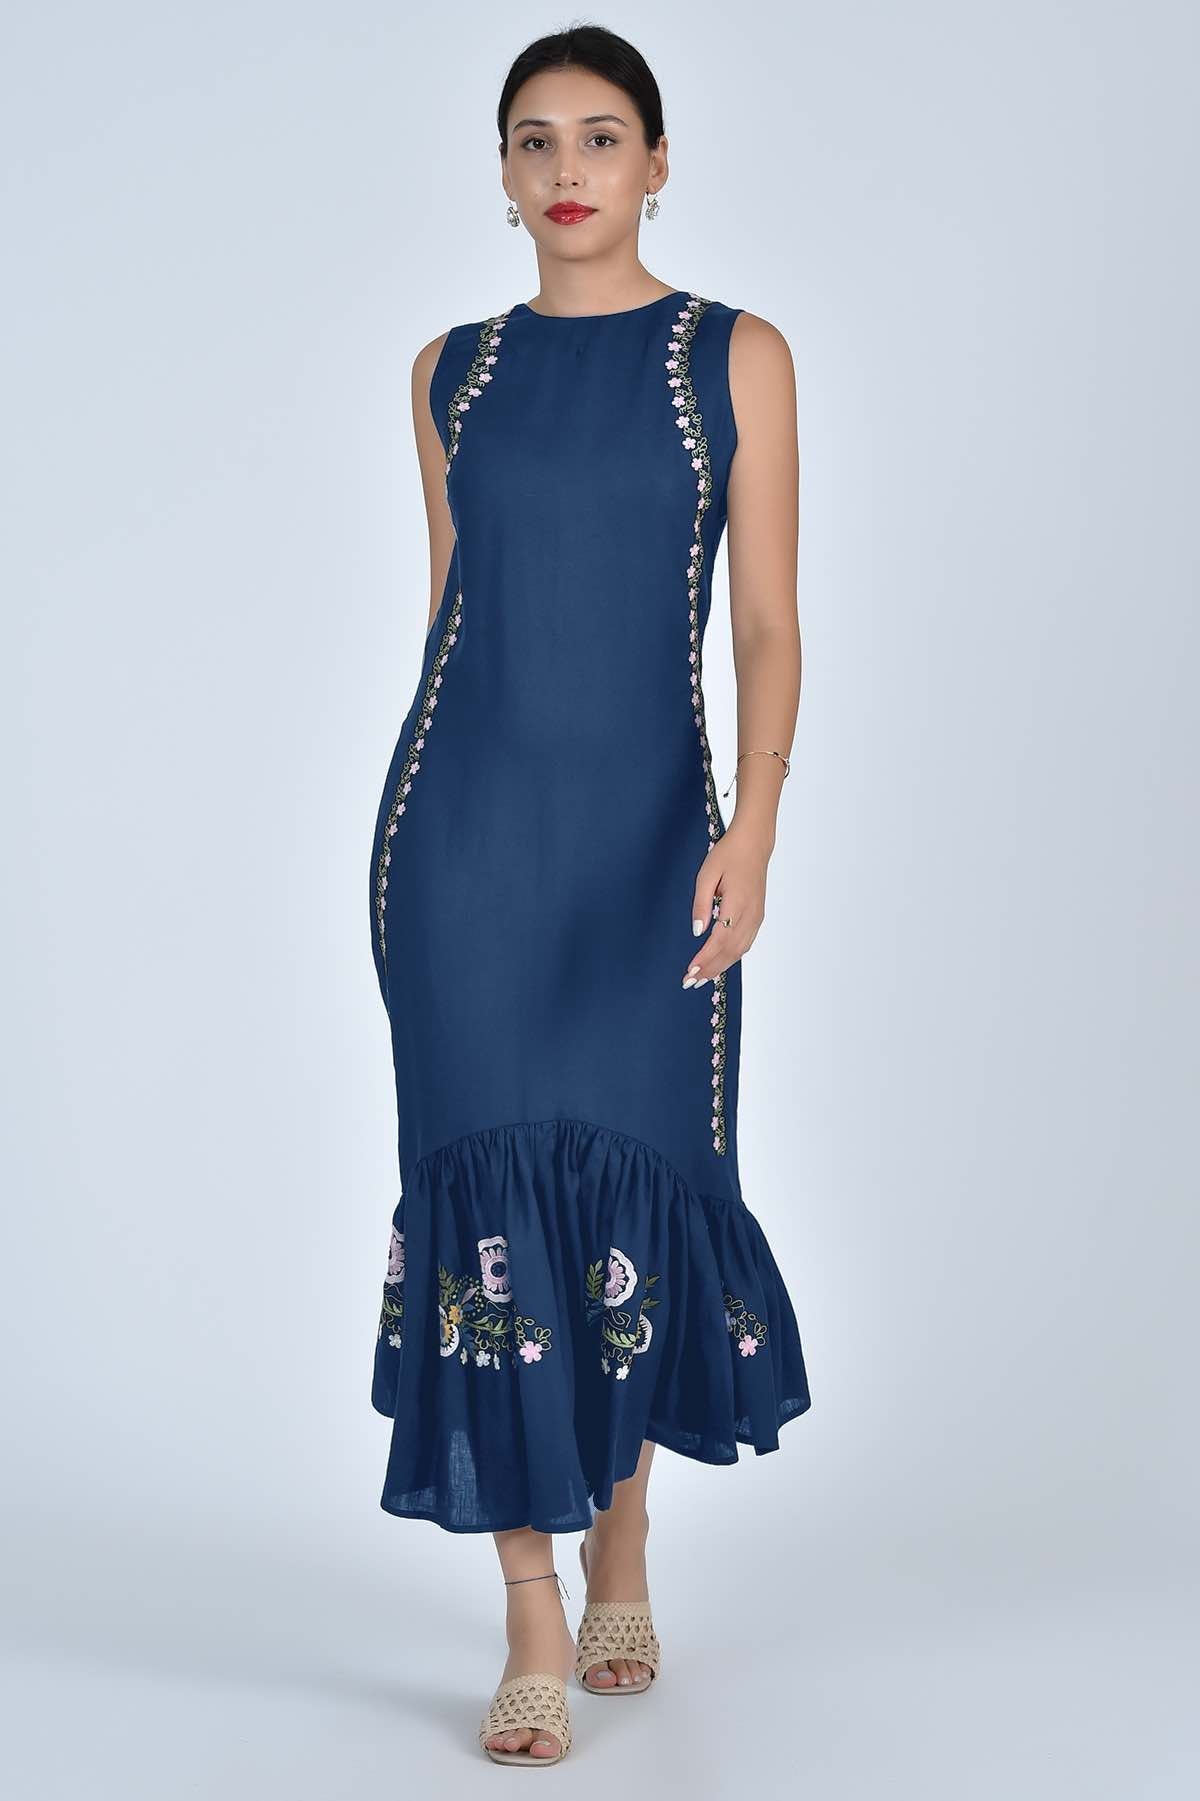 Fanm Mon Dress L / Indigo Blue Elegance